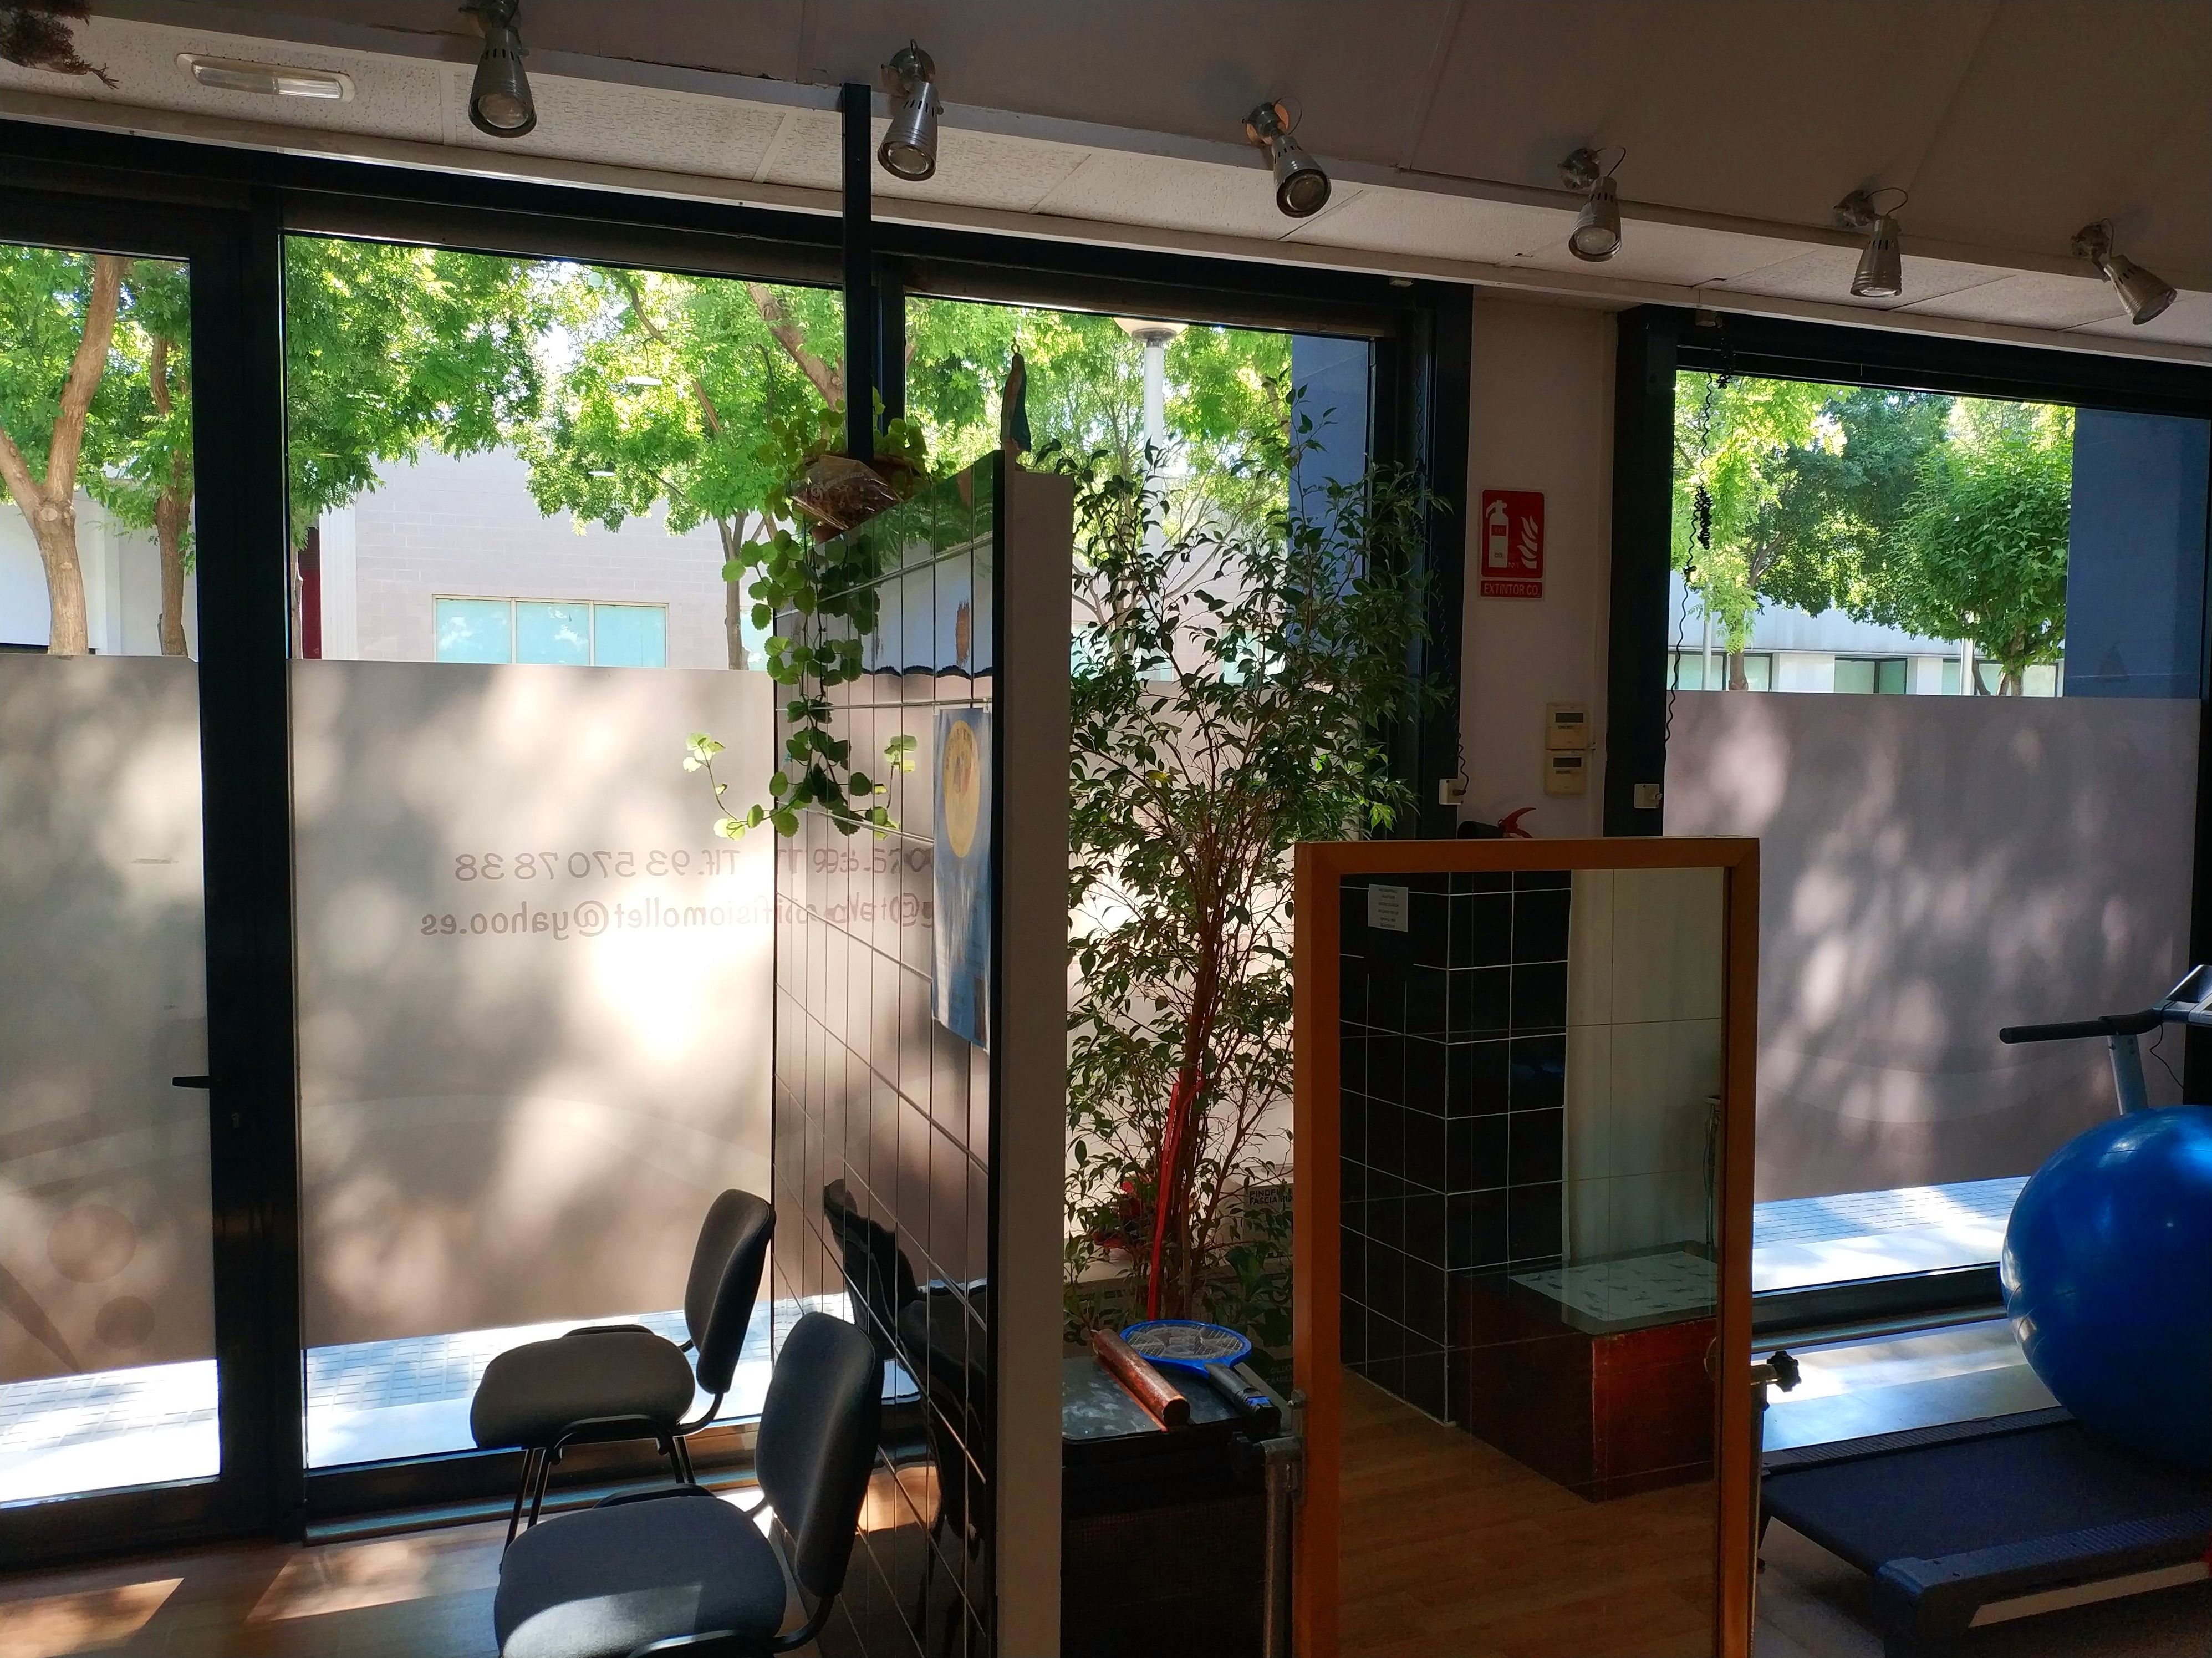 Foto 1 de Fisioterapia en Mollet del Vallès | Fisiomollet